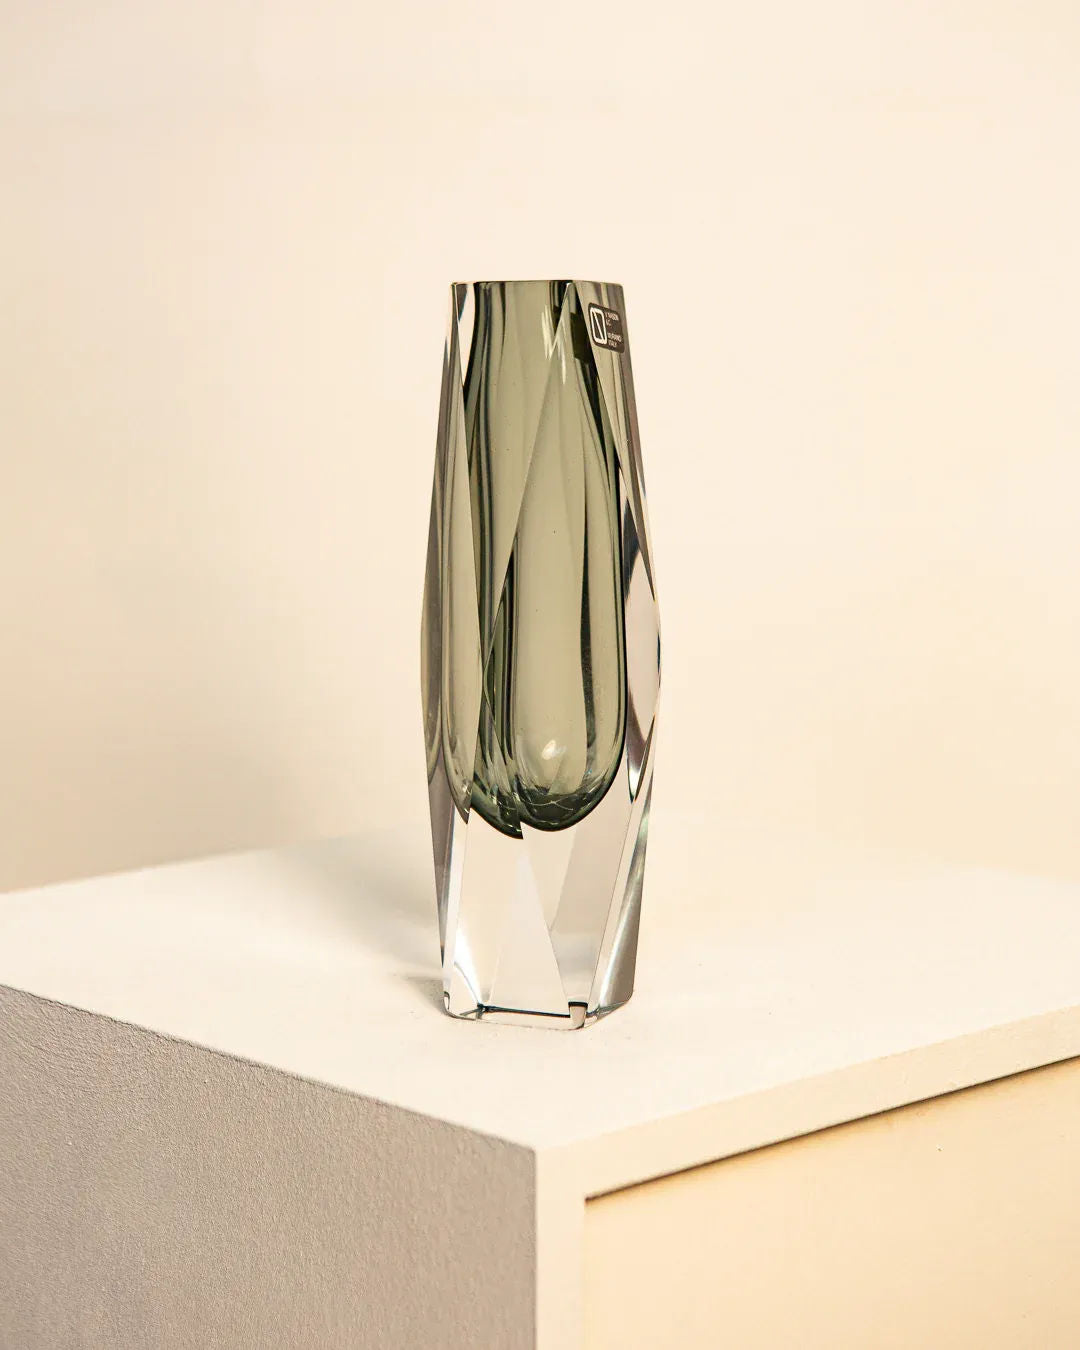 Black "Diamant" Vase by Flavio Poli for V. Nason & Co 70's